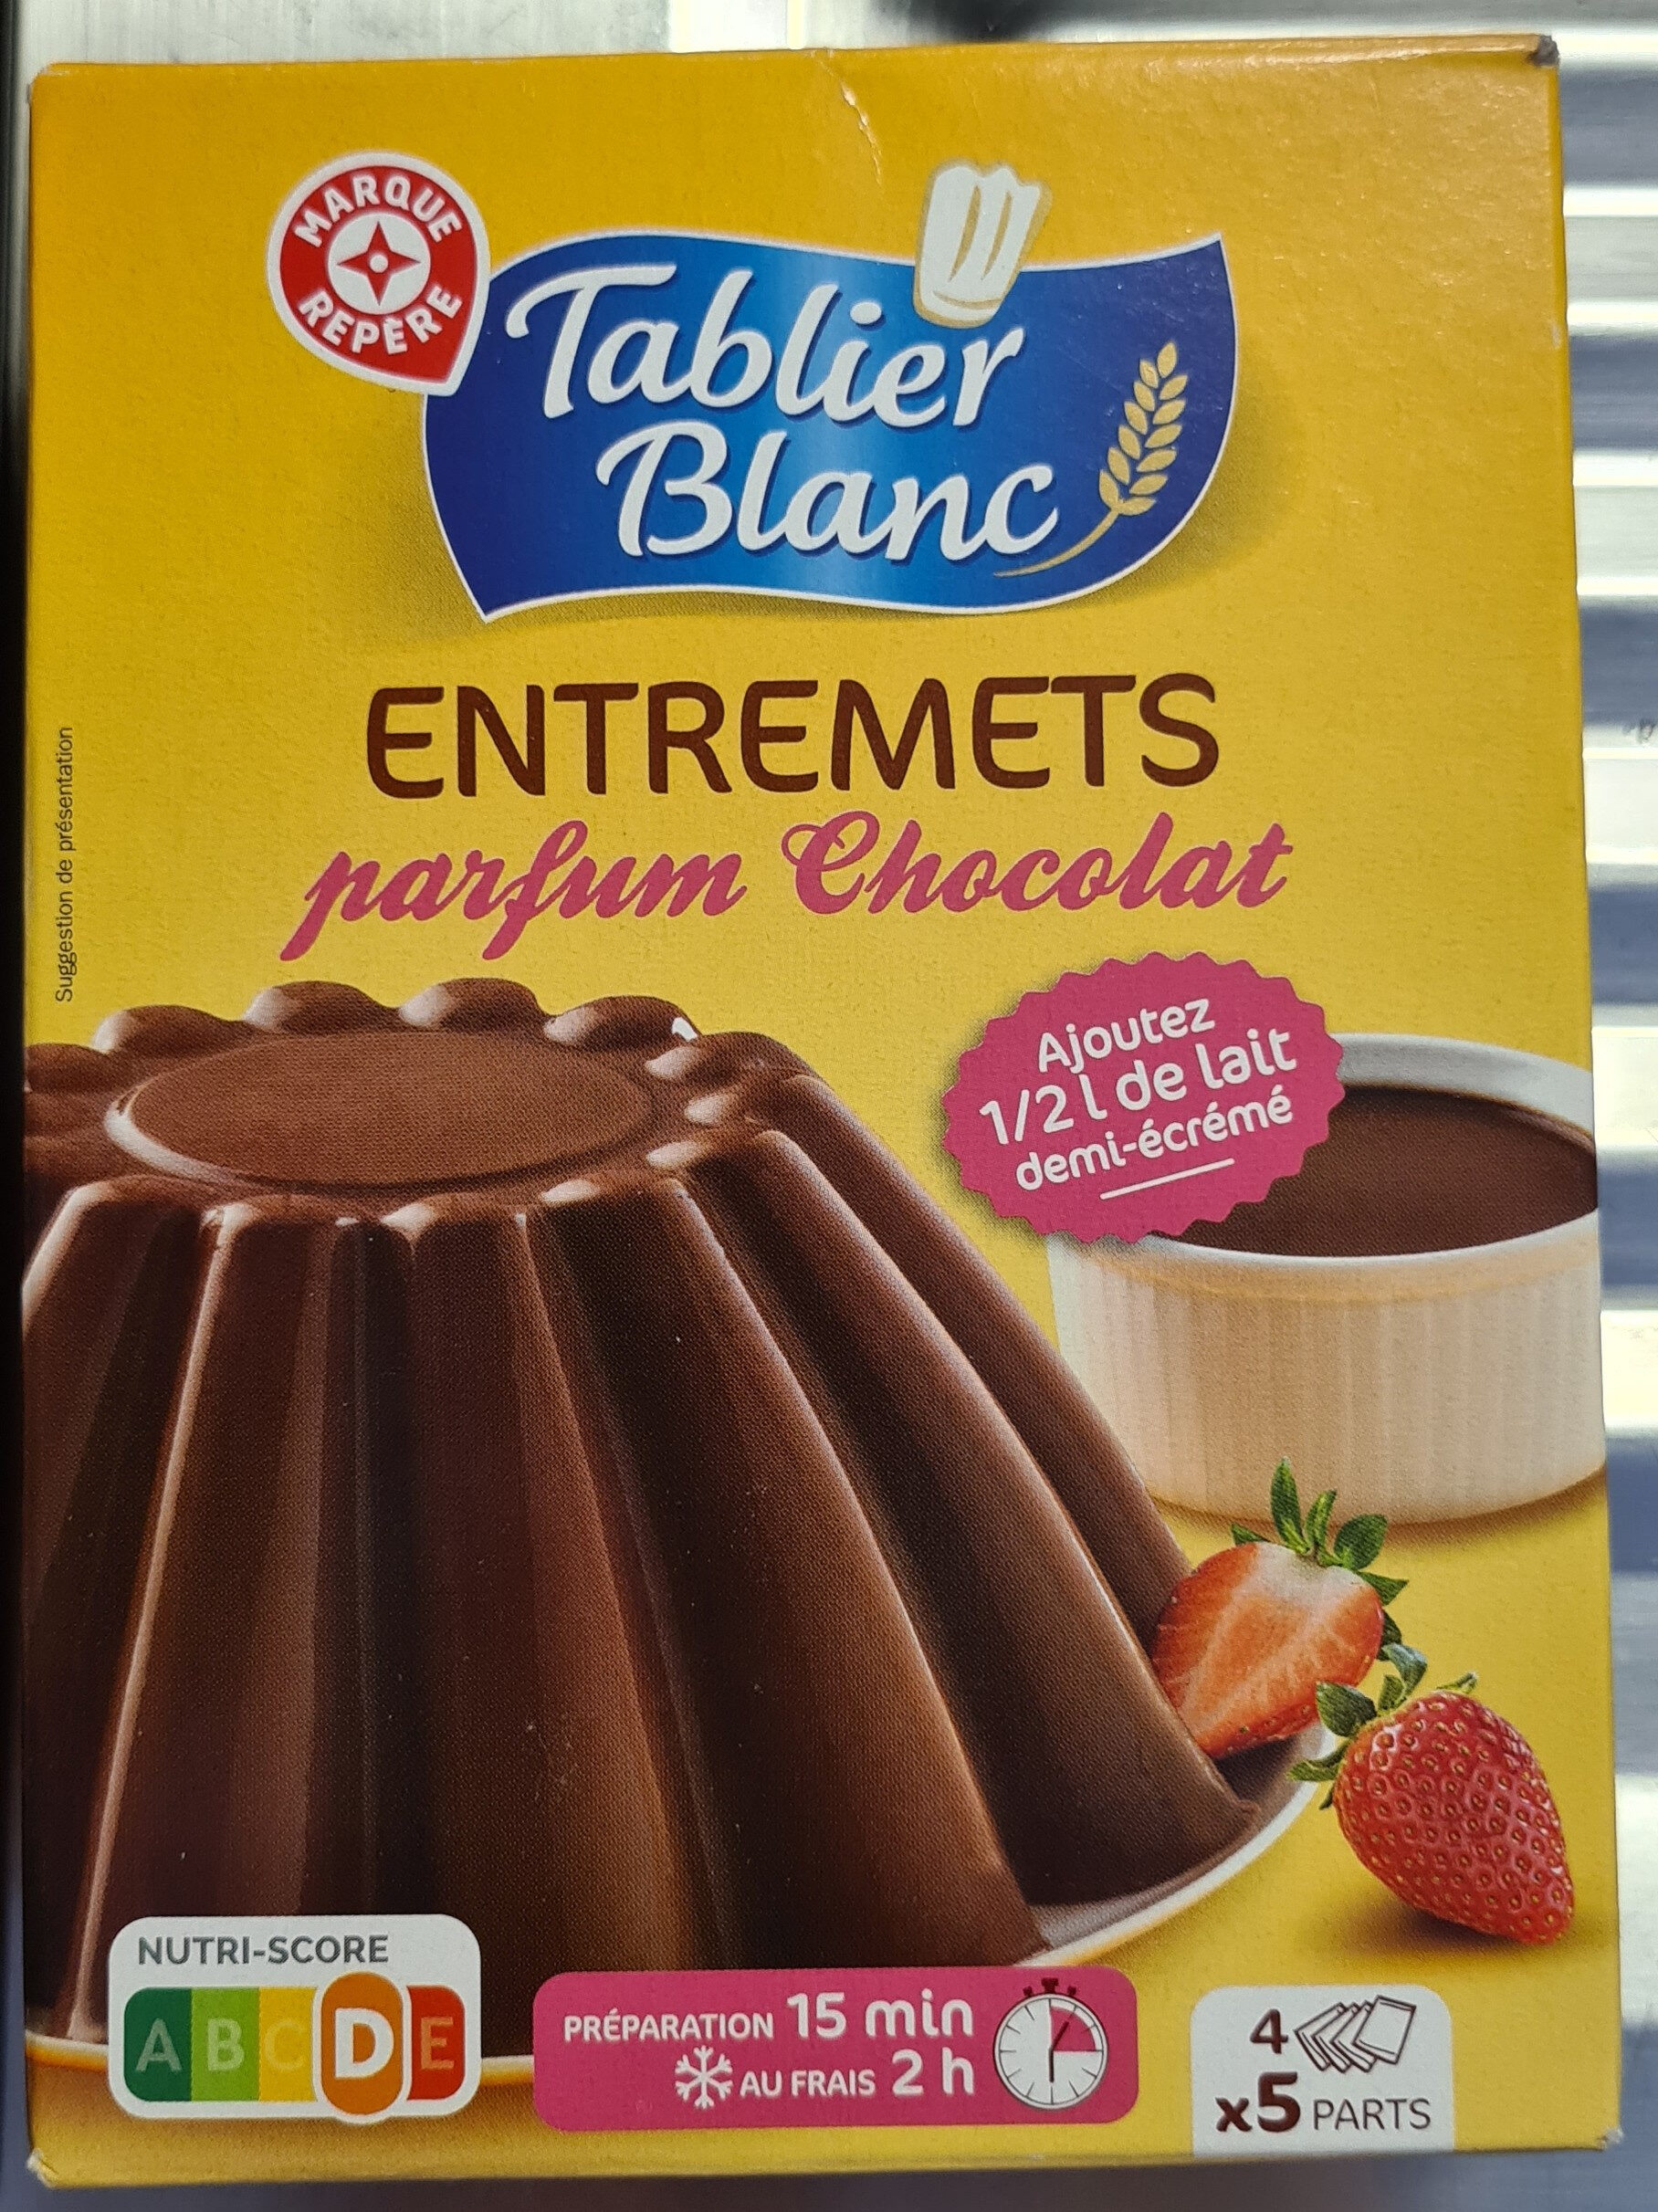 Entremets parfum Chocolat - Product - fr